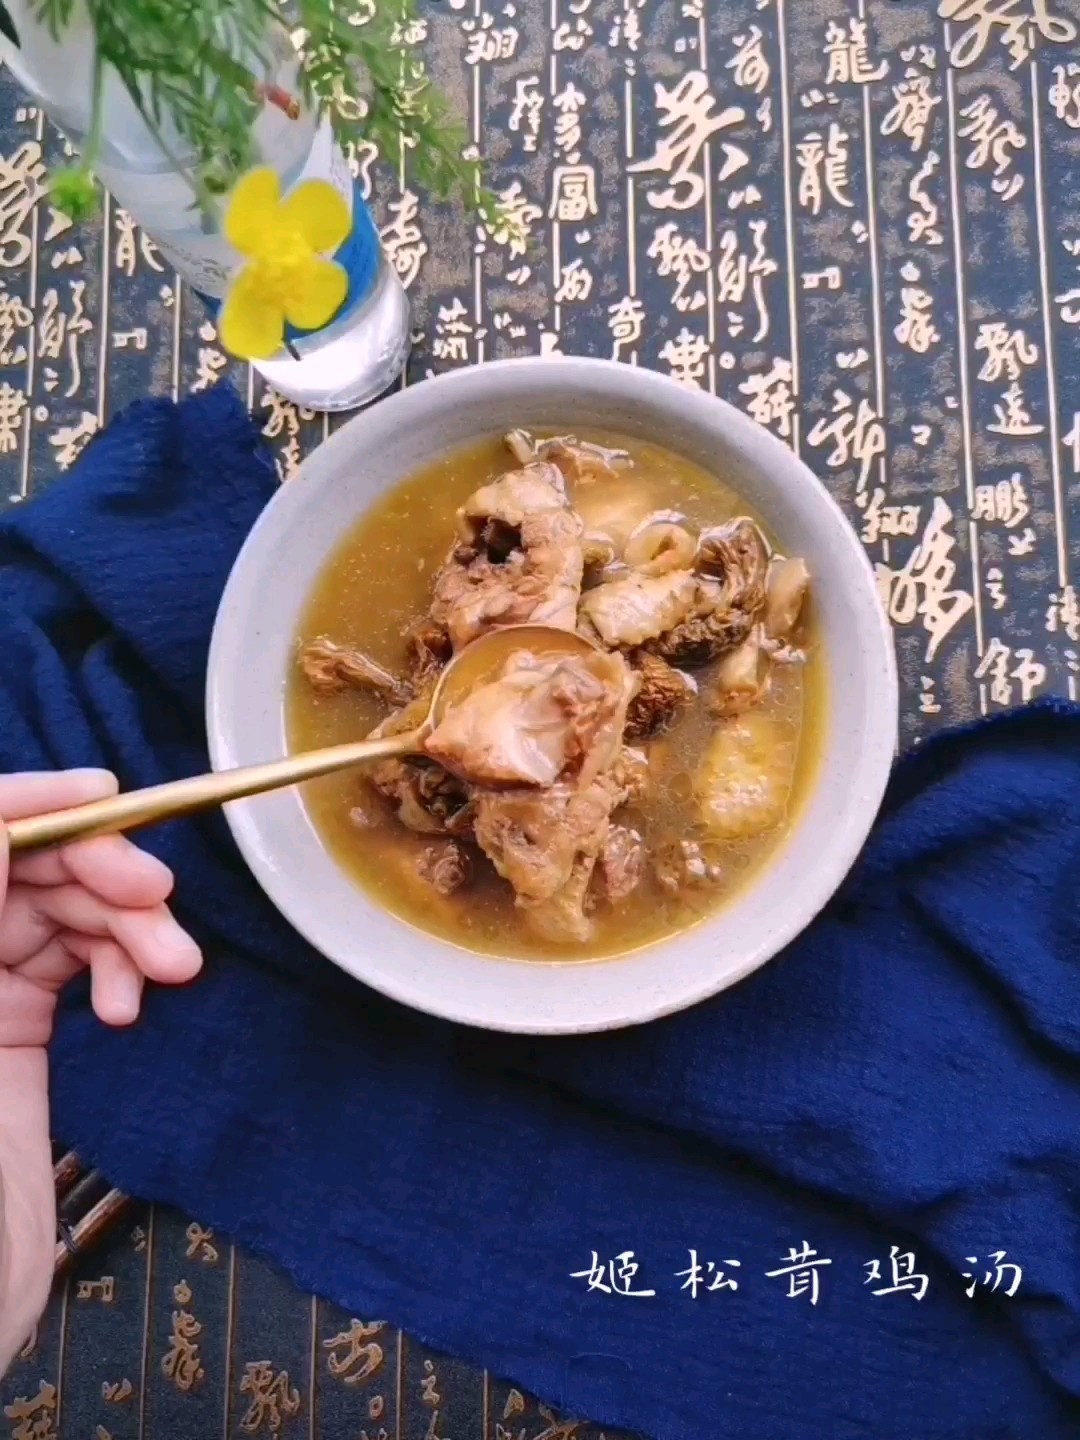 Agaricus Chicken Soup